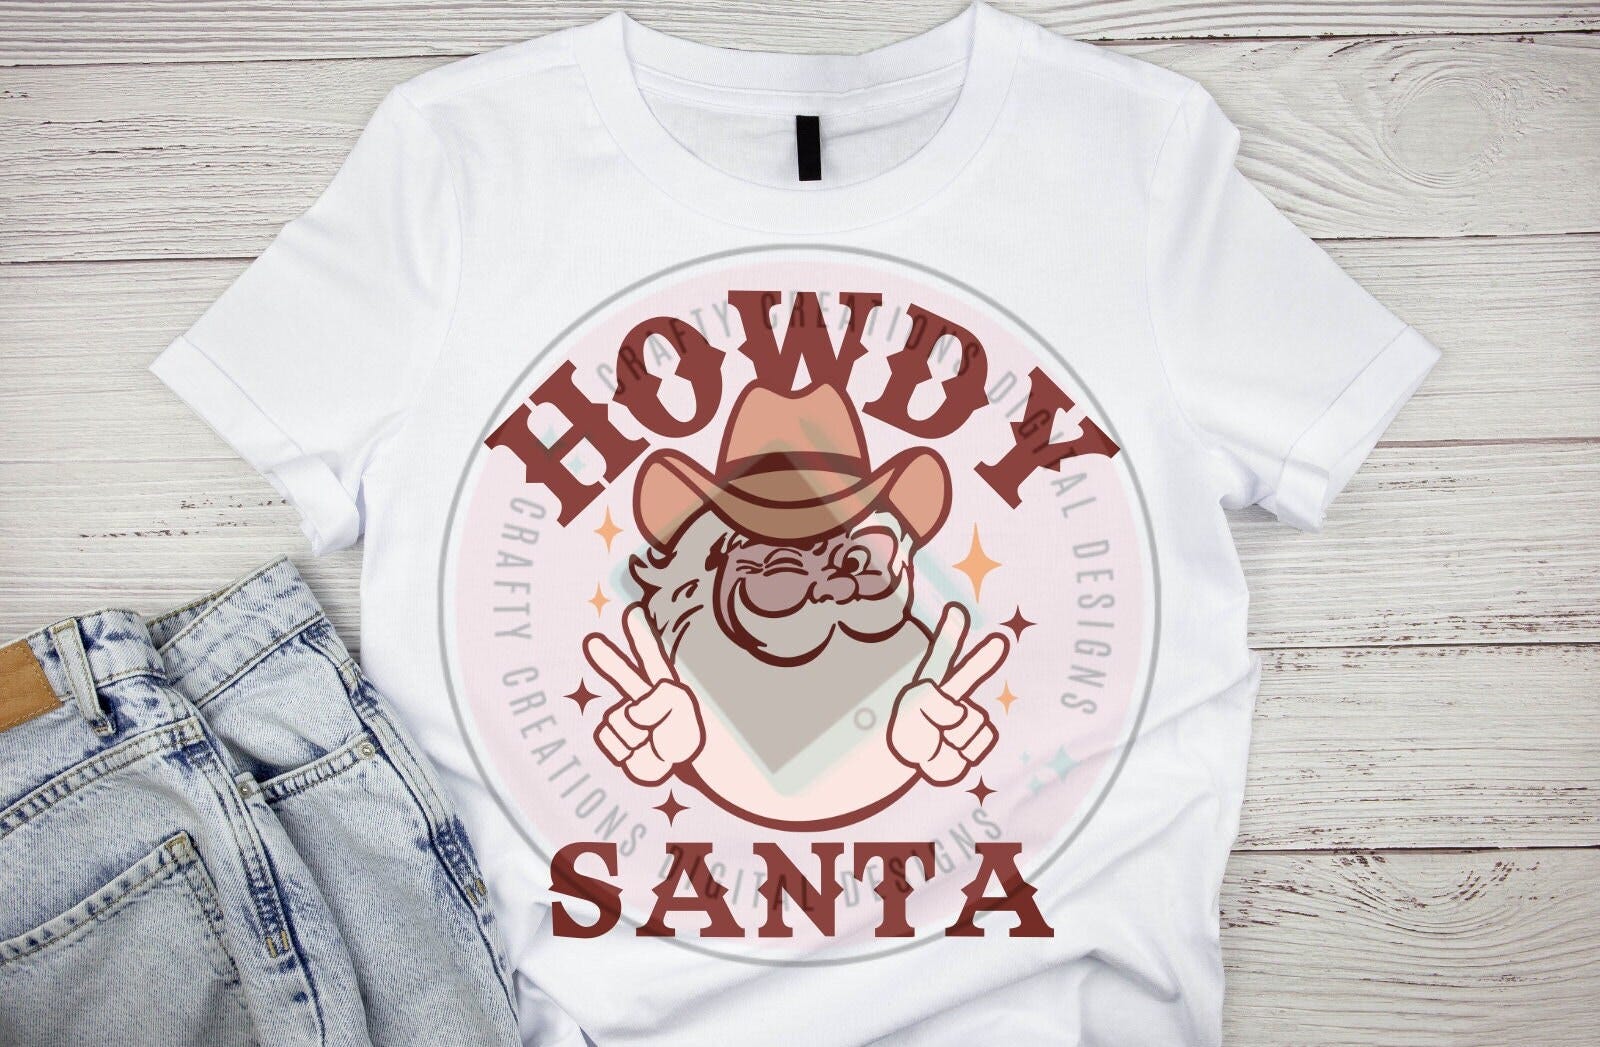 Howdy Santa Png, Cowboy Santa Png, Digital Download, Sublimation Png, Santa in cowboy Hat Png, Western Santa Claus Png, Howdy Png, Retro Png